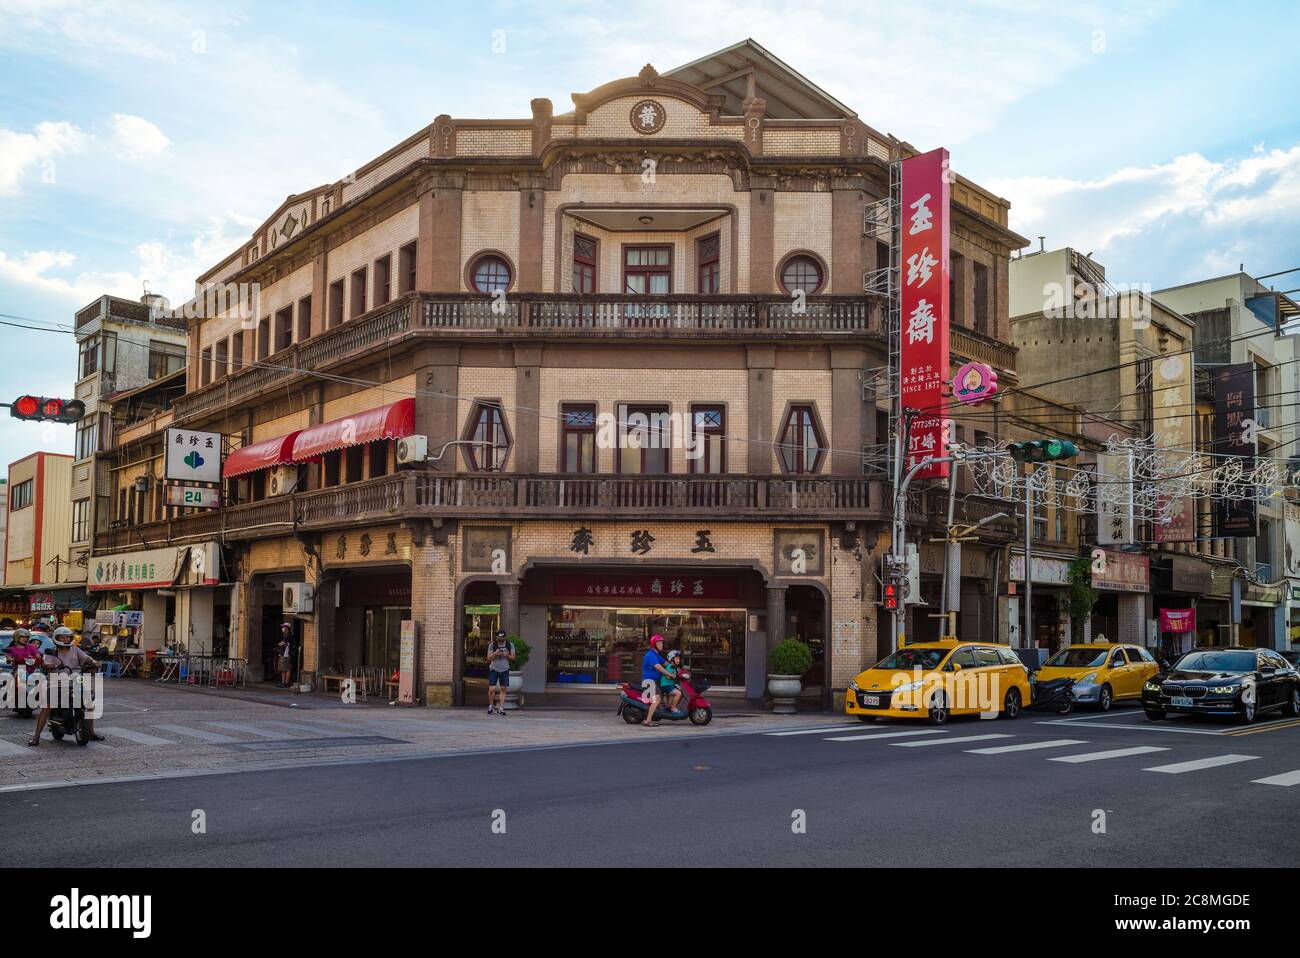 24 luglio 2020: Yu Jen Jai è una panetteria specializzata in pasticceria cinese, ed è tra i più antichi negozi esistenti fondata nel 1877. Il negozio originale era Foto Stock